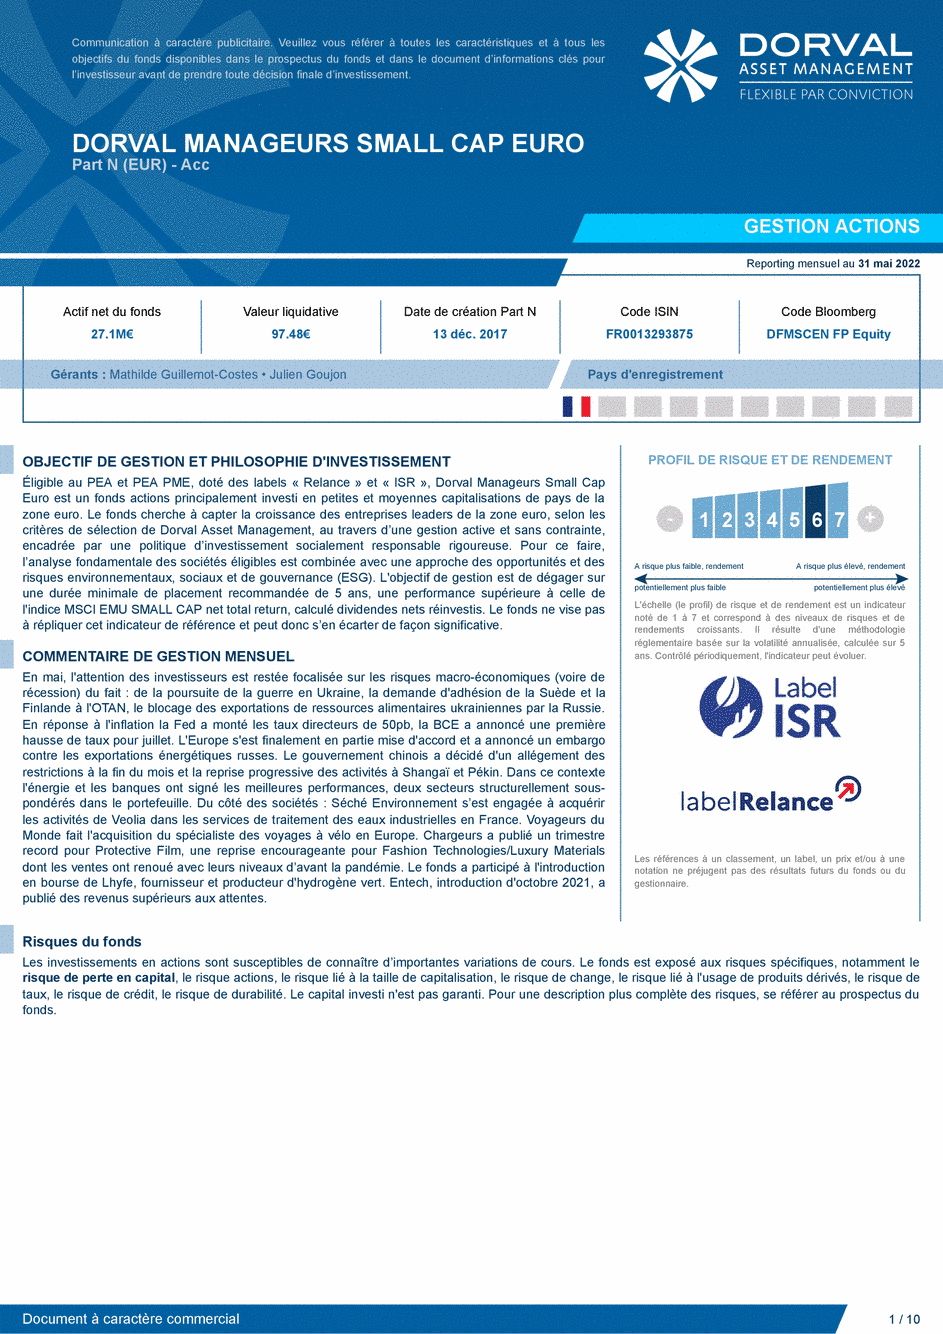 Reporting DORVAL MANAGEURS SMALL CAP EURO N - 31/05/2022 - Français